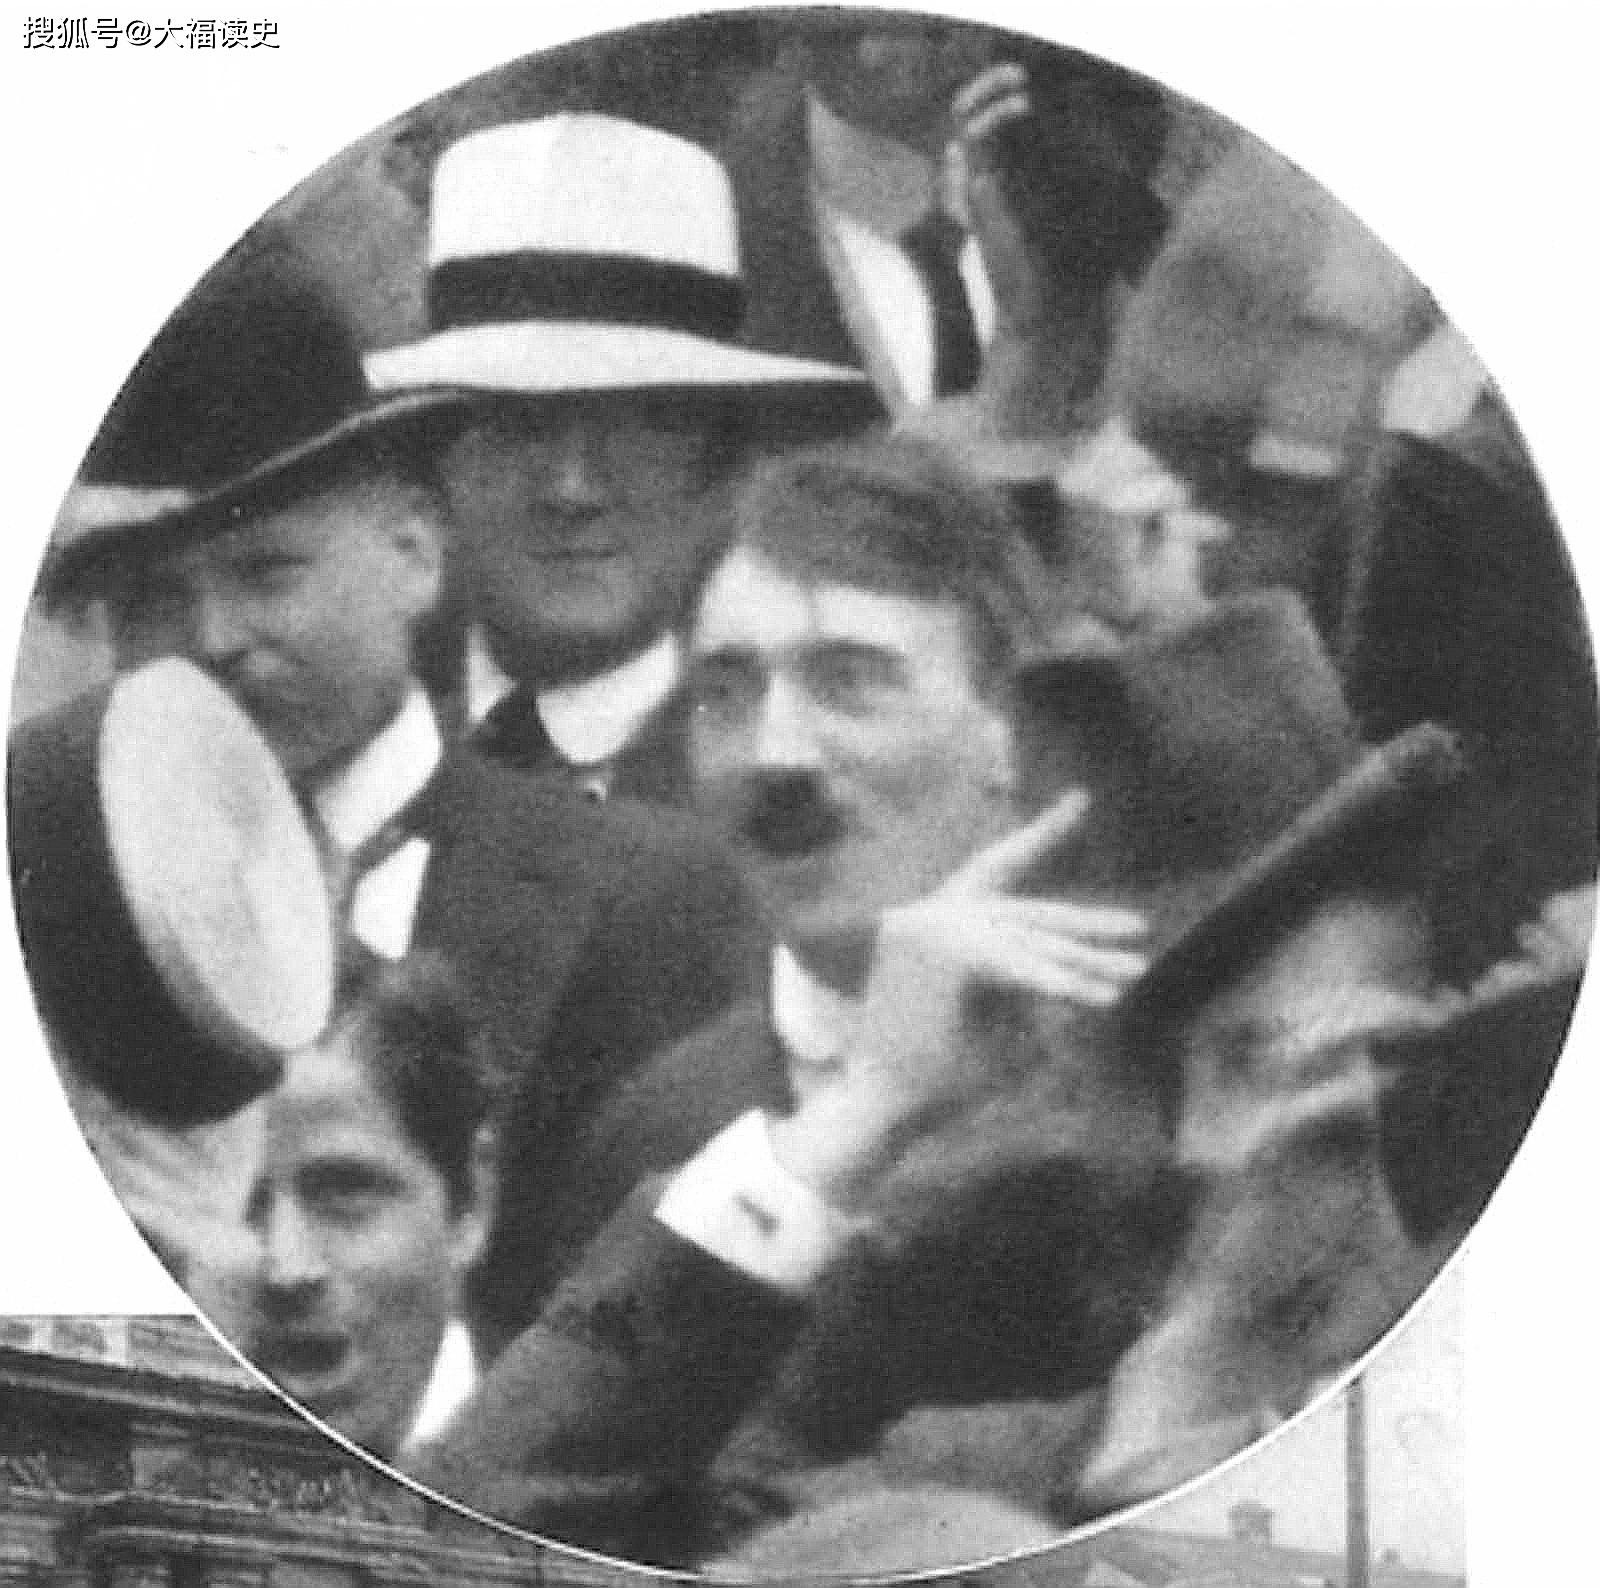 原创老照片:1914年的慕尼黑广场,文艺青年希特勒正在庆祝一战爆发!